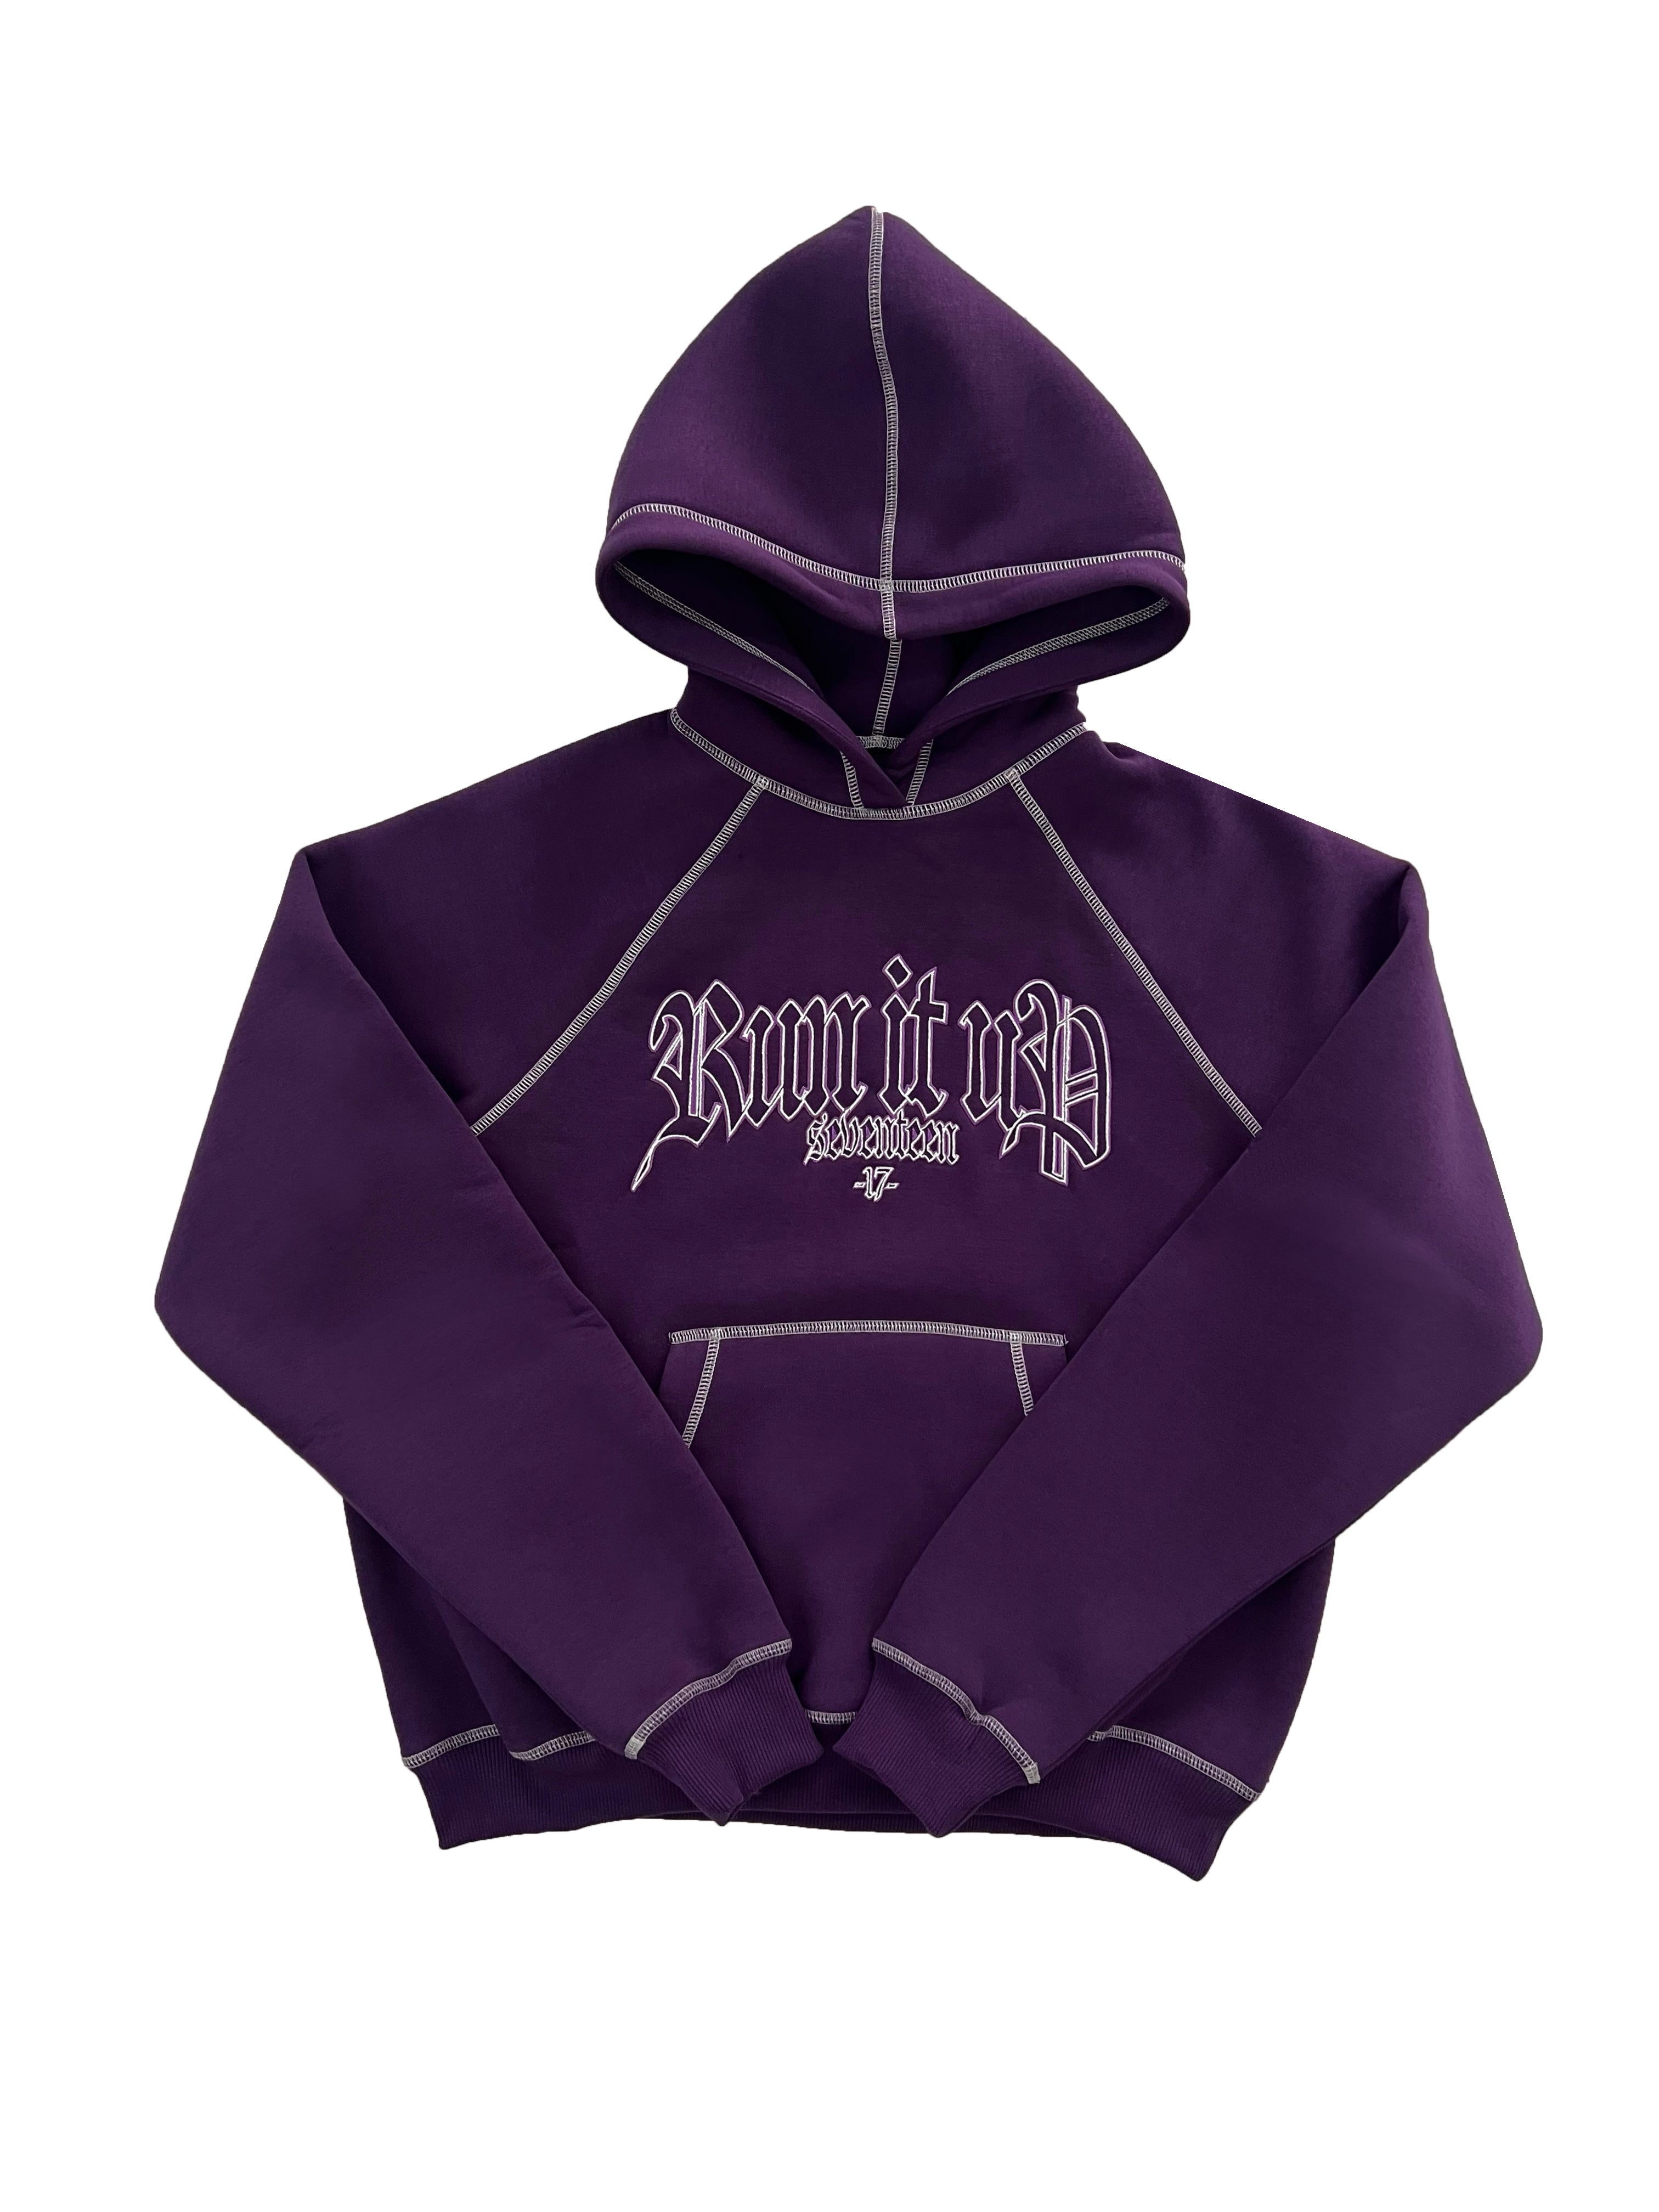 Run it up 2.0 - Purple Hoodie